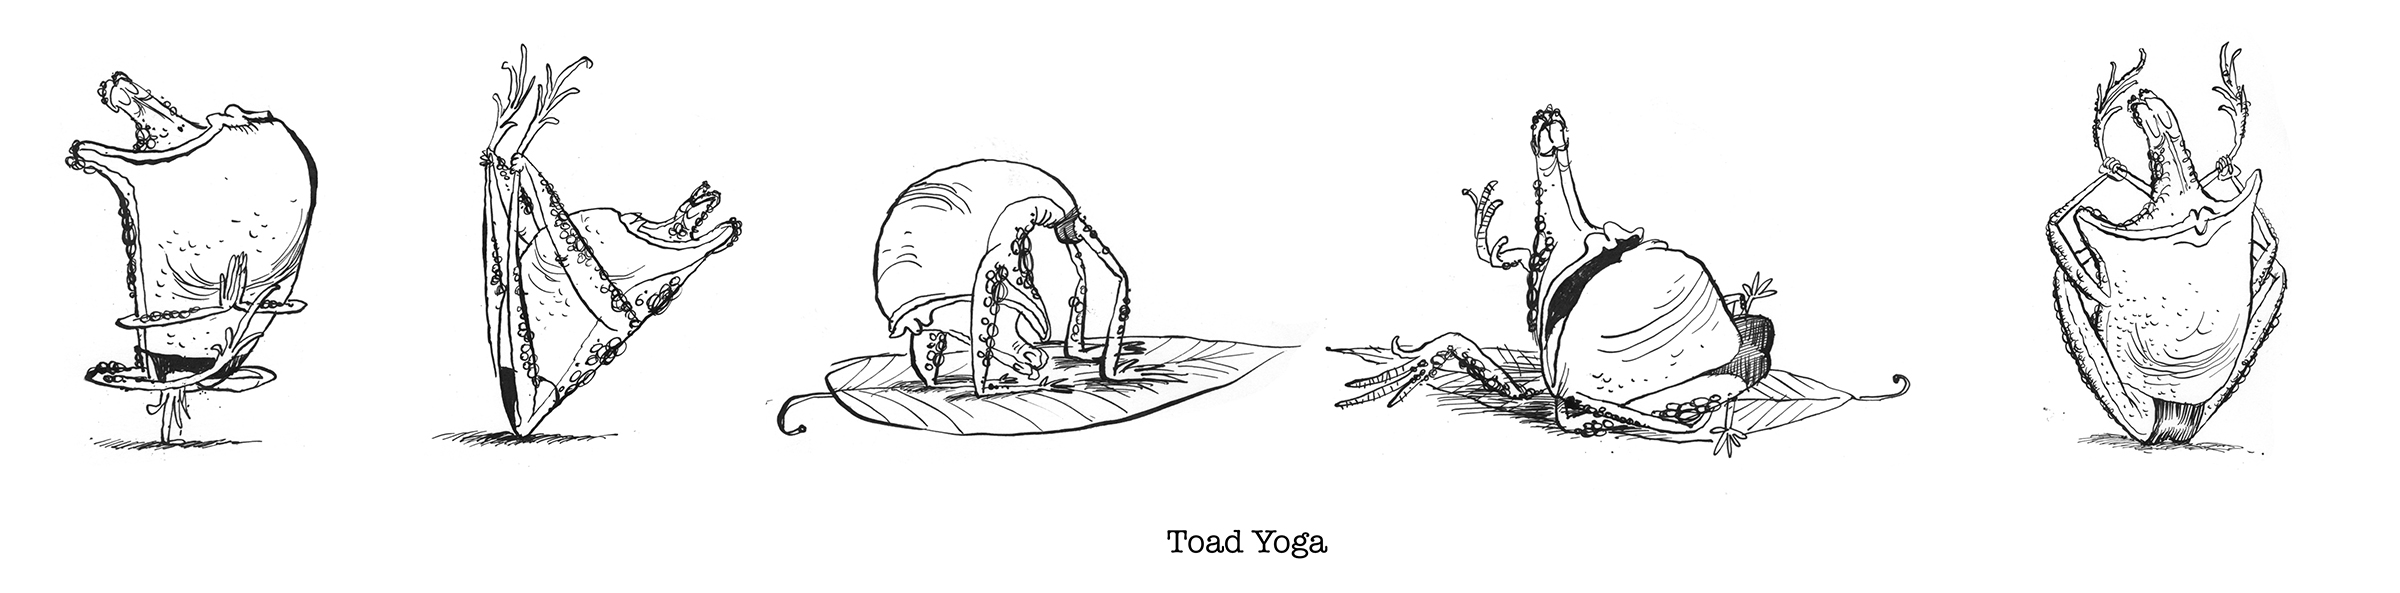 toad yoga.jpg